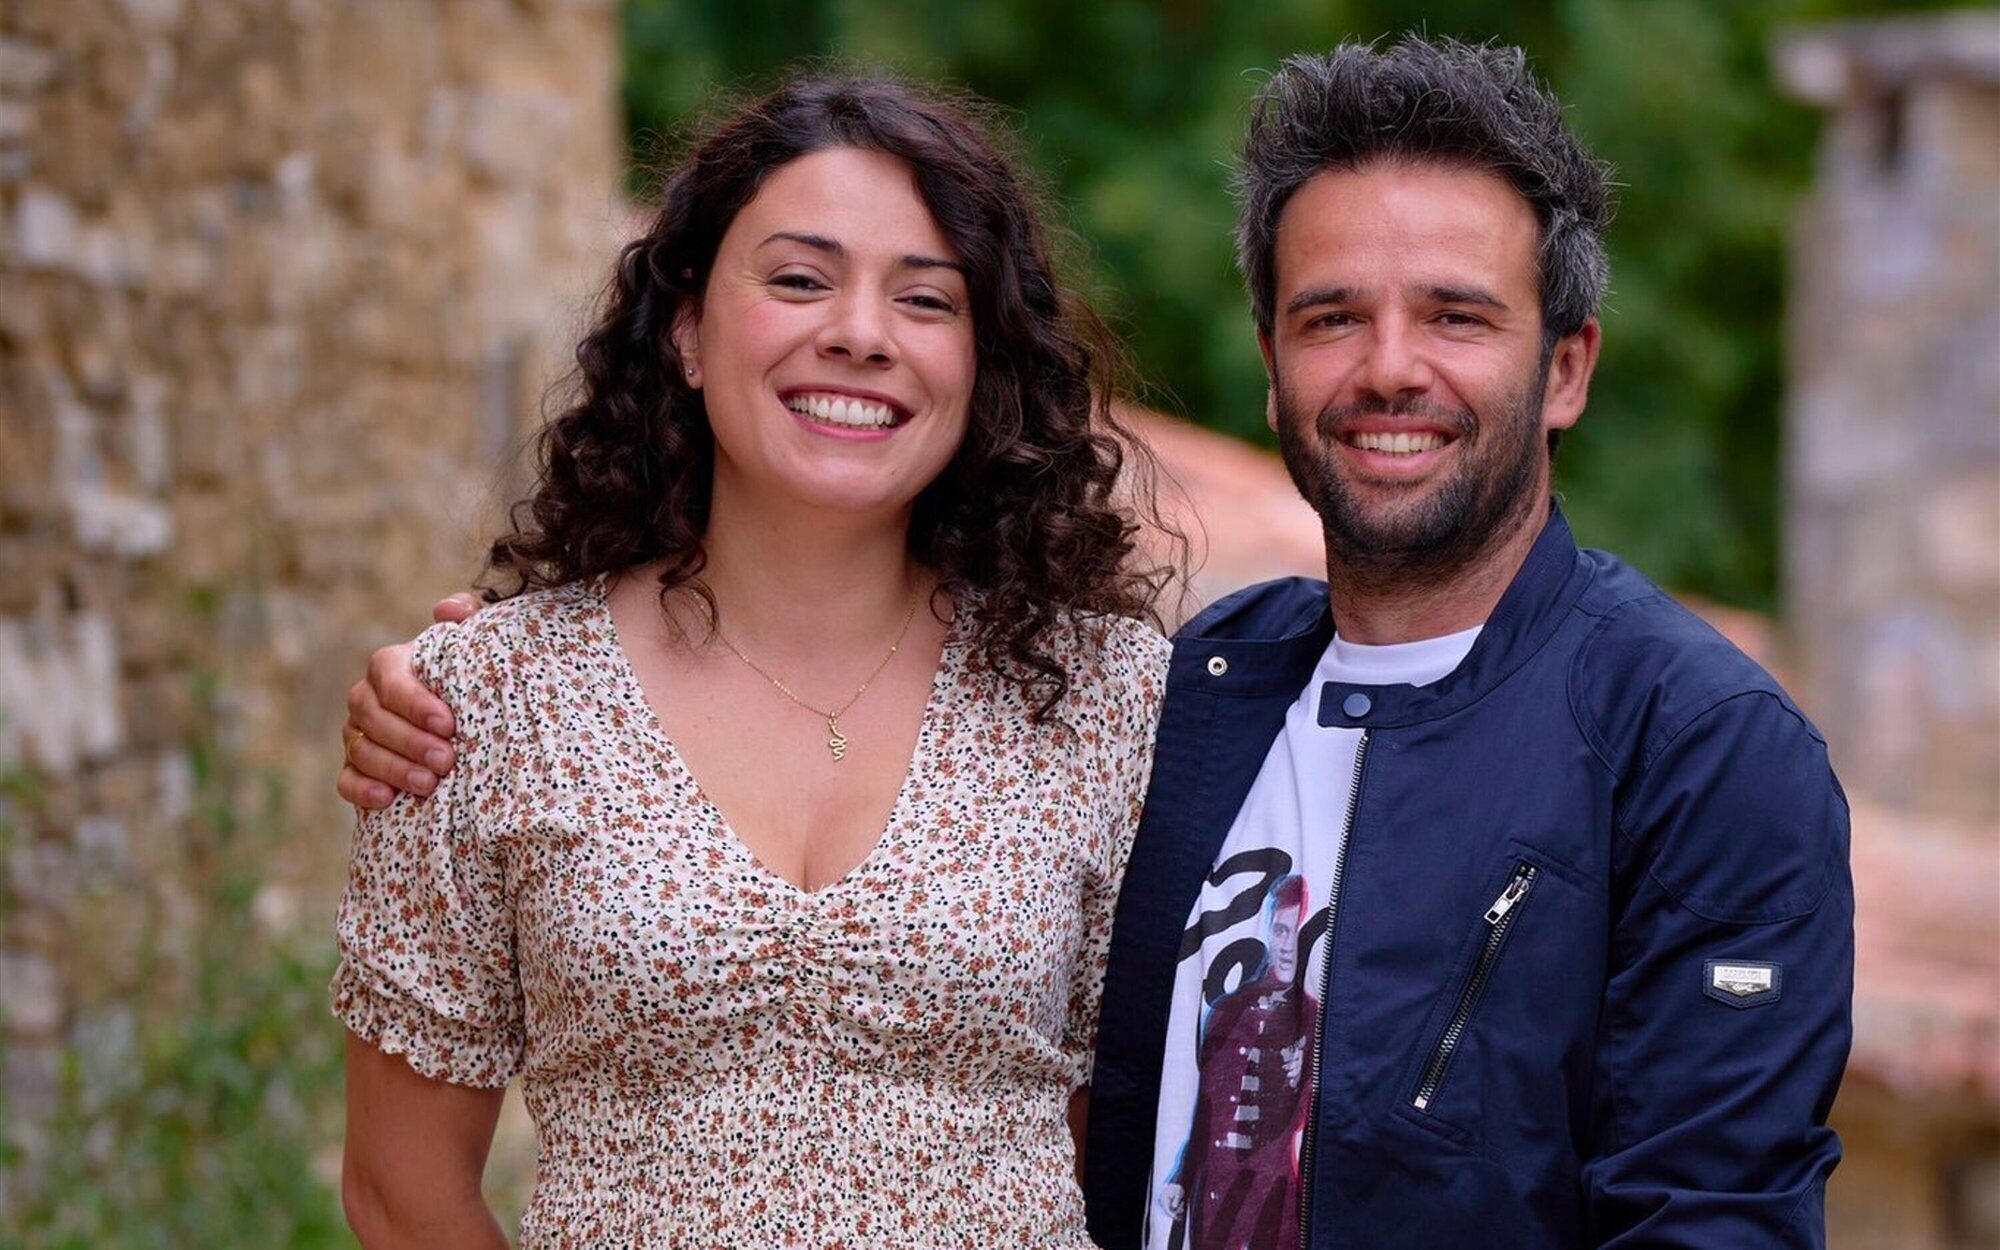 Crossover en Contubernio, 49: Ana Arias y Raúl Peña interpretarán a los personajes de 'El pueblo' en 'LQSA'